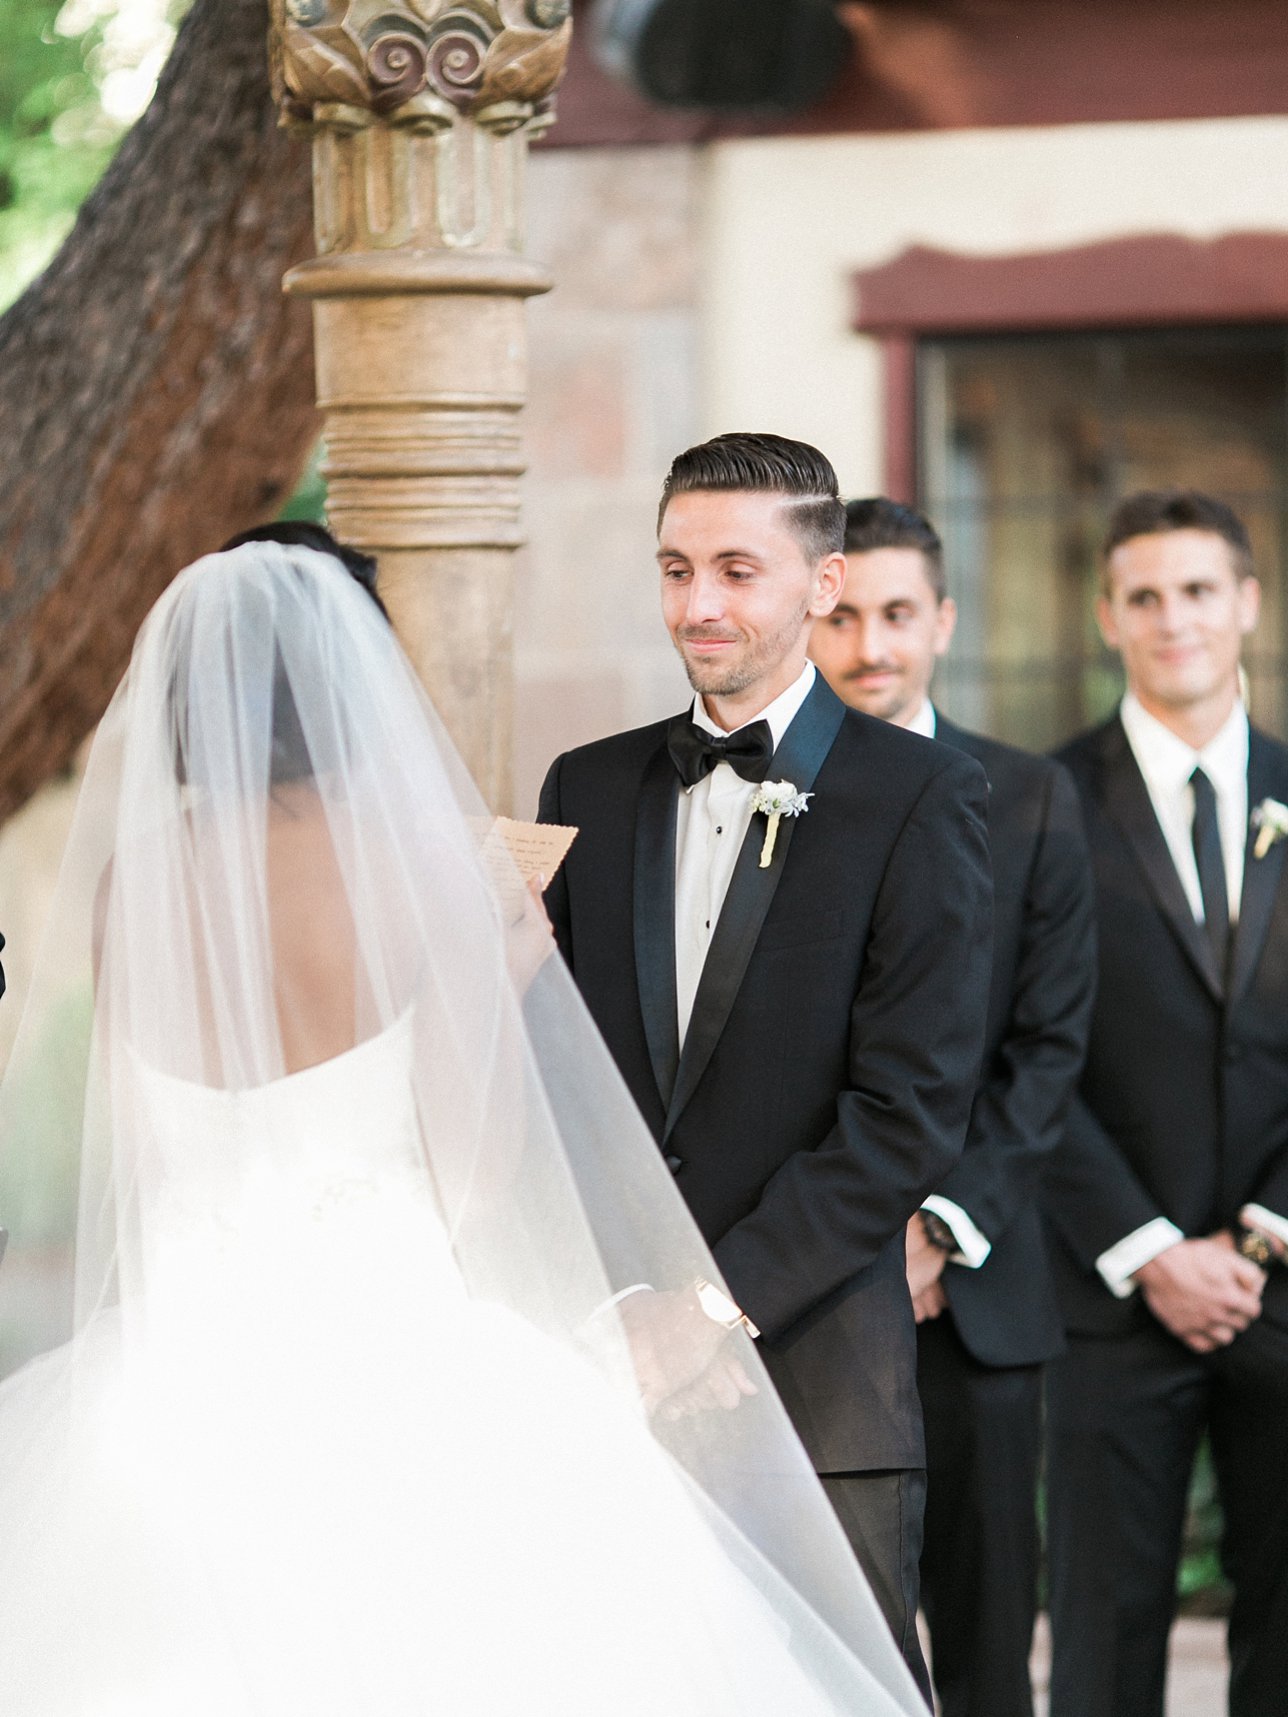 Scottsdale Wedding Photographer | Rachel Solomon Photography_6079